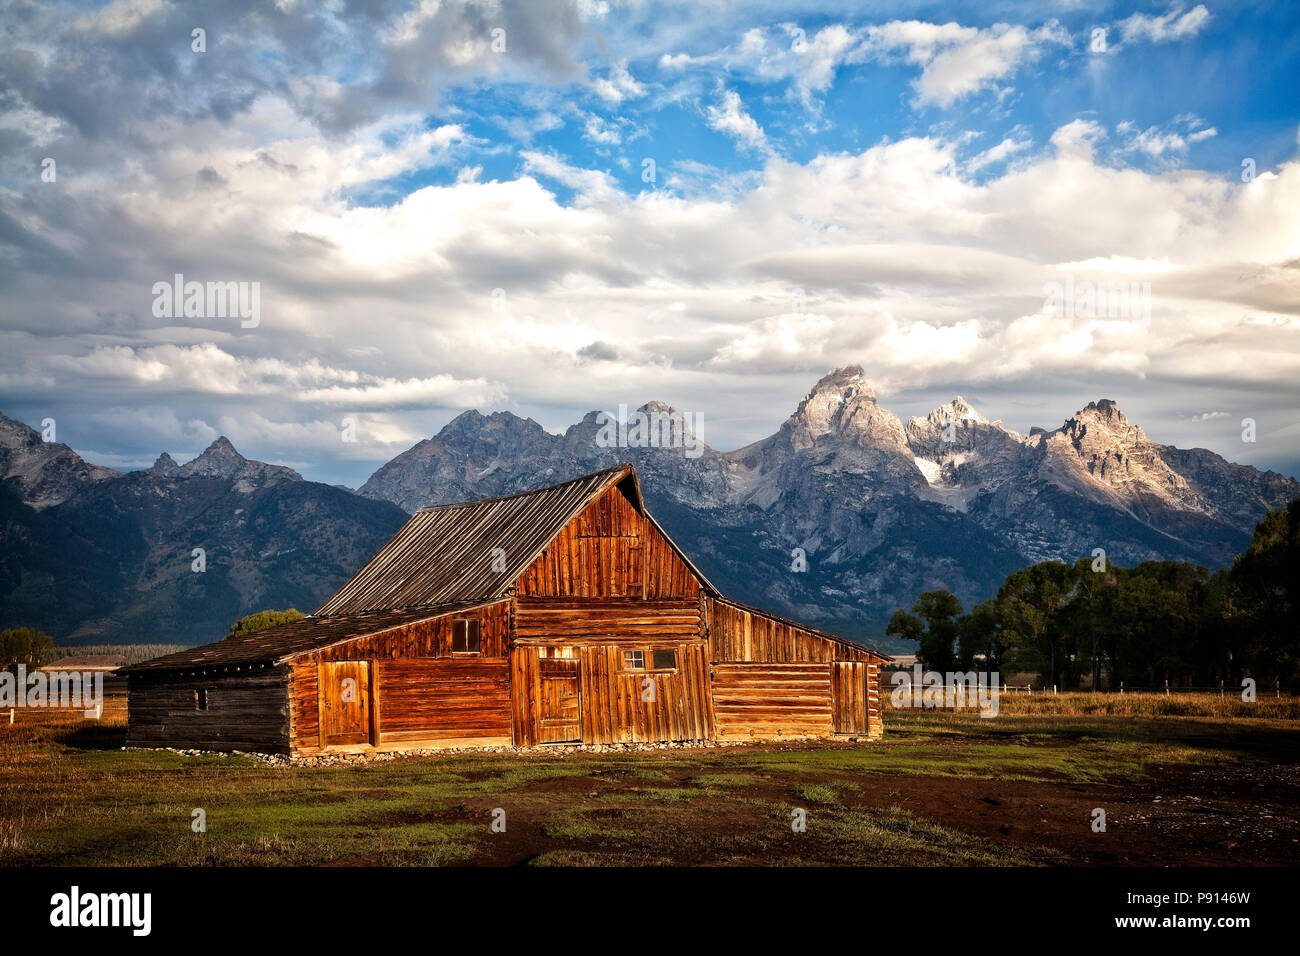 The Thomas Moulton barn on Mormon row near Grand Teton National Park. Wyoming. Stock Photo